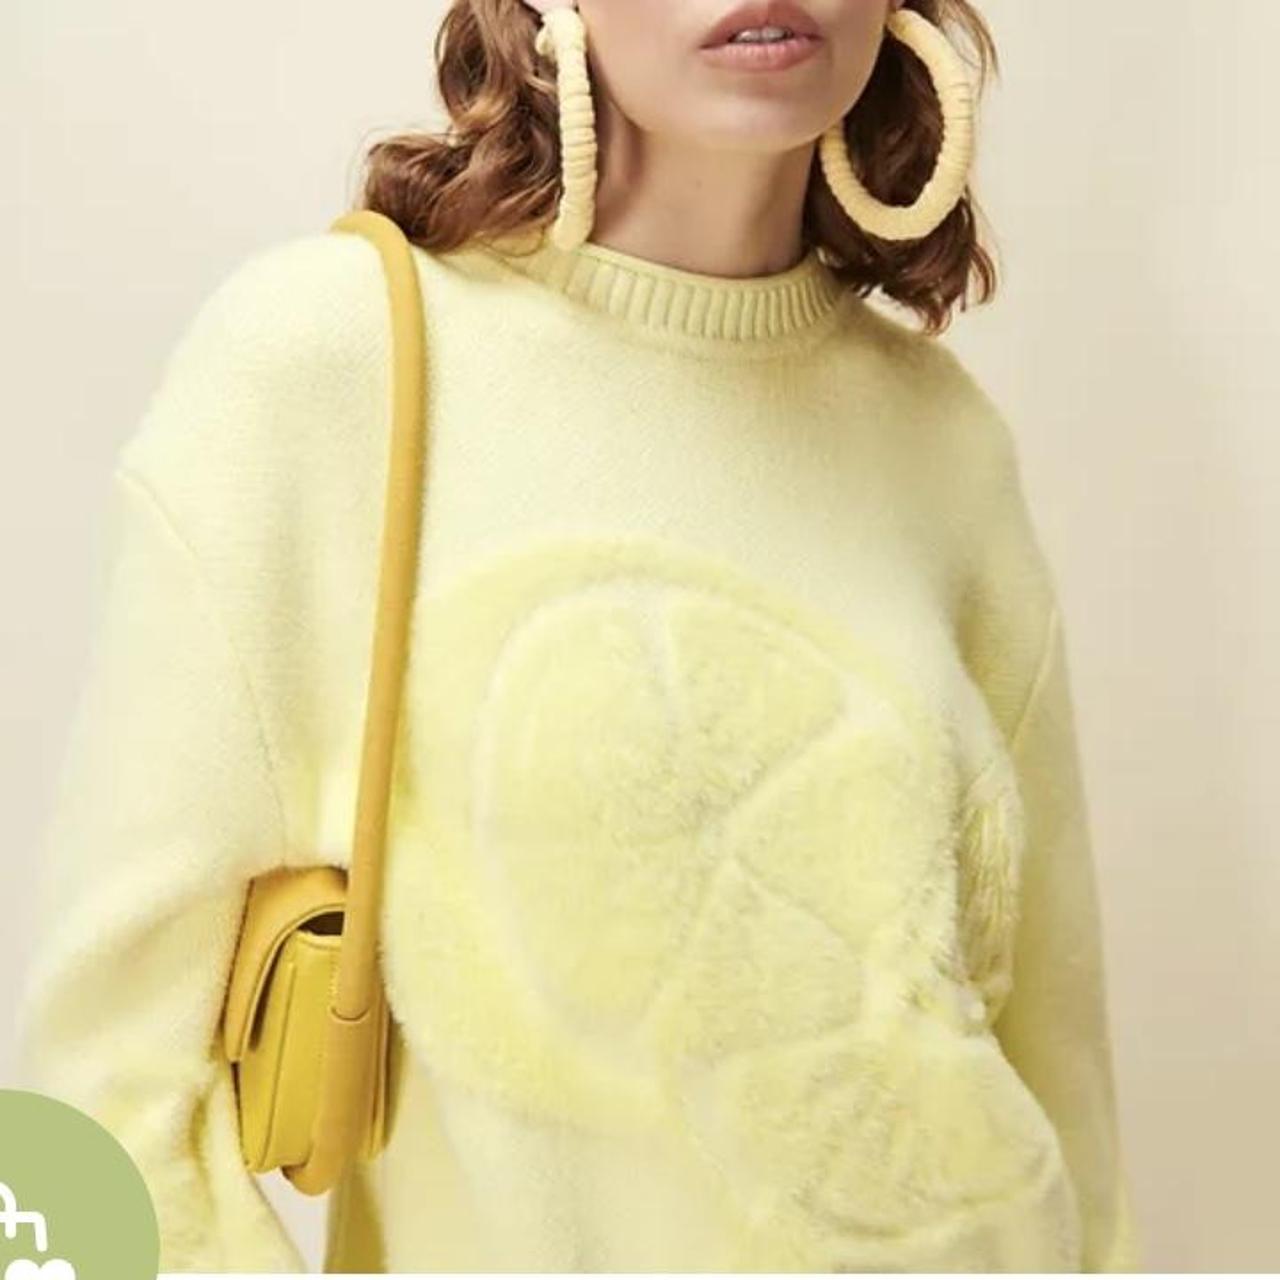 House of sunny still life knit lemon jumper sweater... - Depop